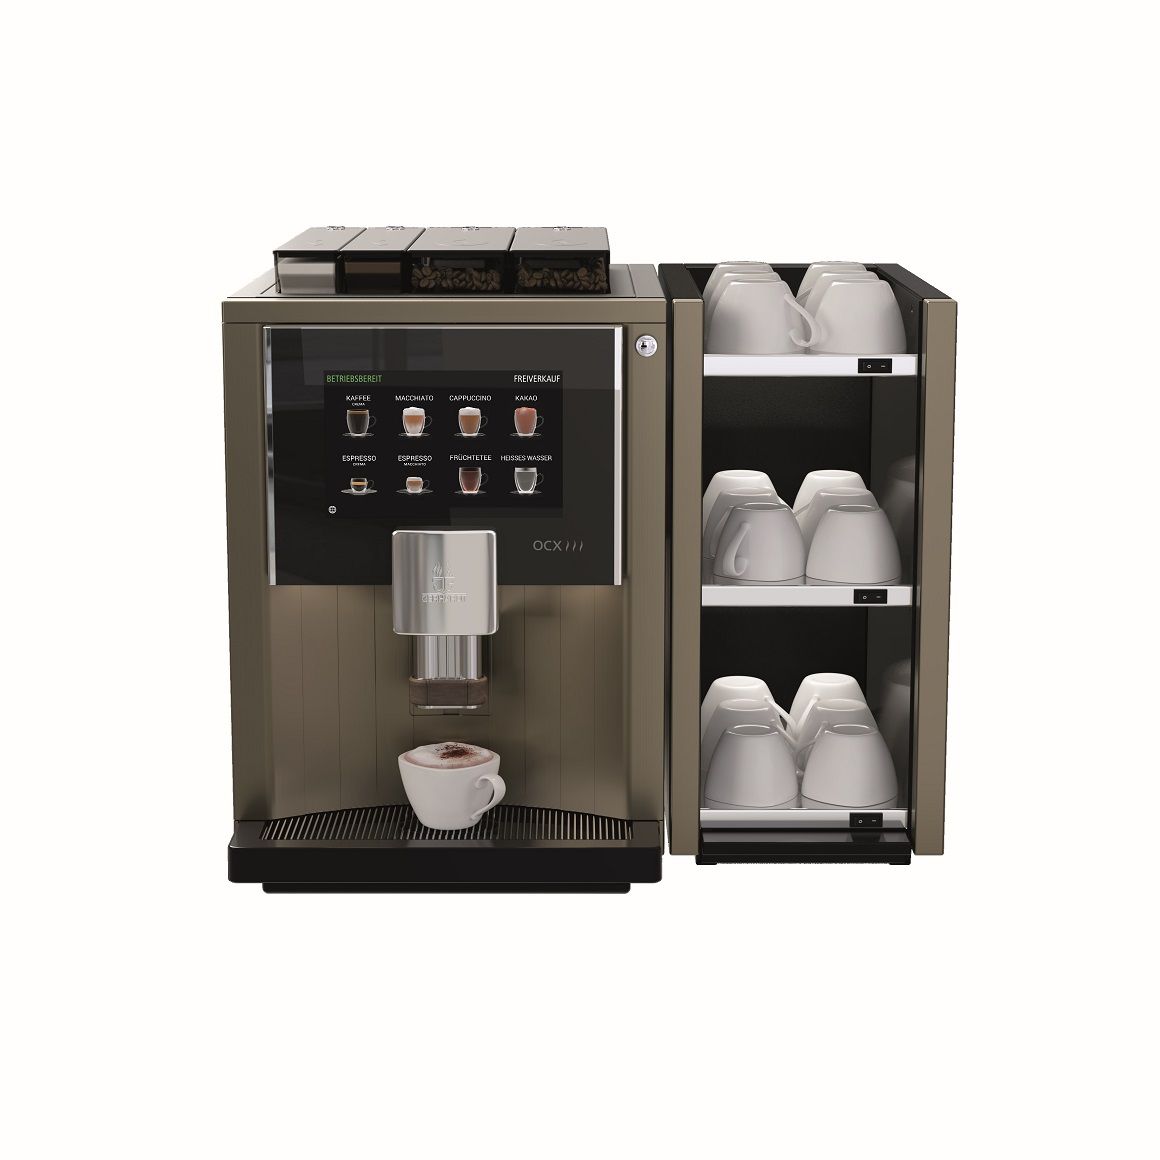 Die OCX-Serie der Kaffeeautomaten